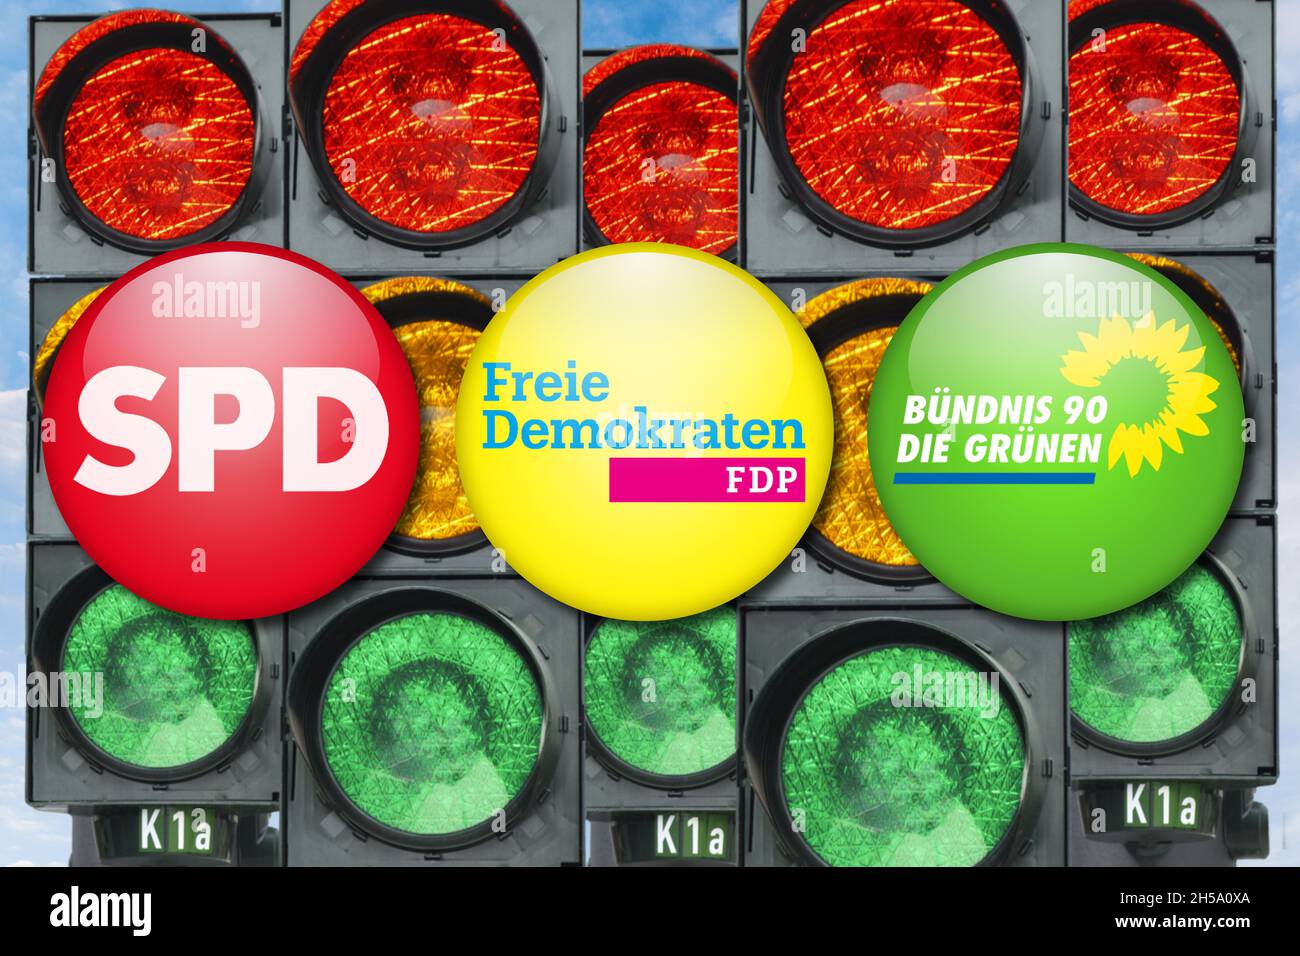 FOTOMONTAGE, Parteien-Anstecker vor Verkehrsampeln, Koalition aus SPD, FDP und Grüne, Ampel-Koalition Foto Stock